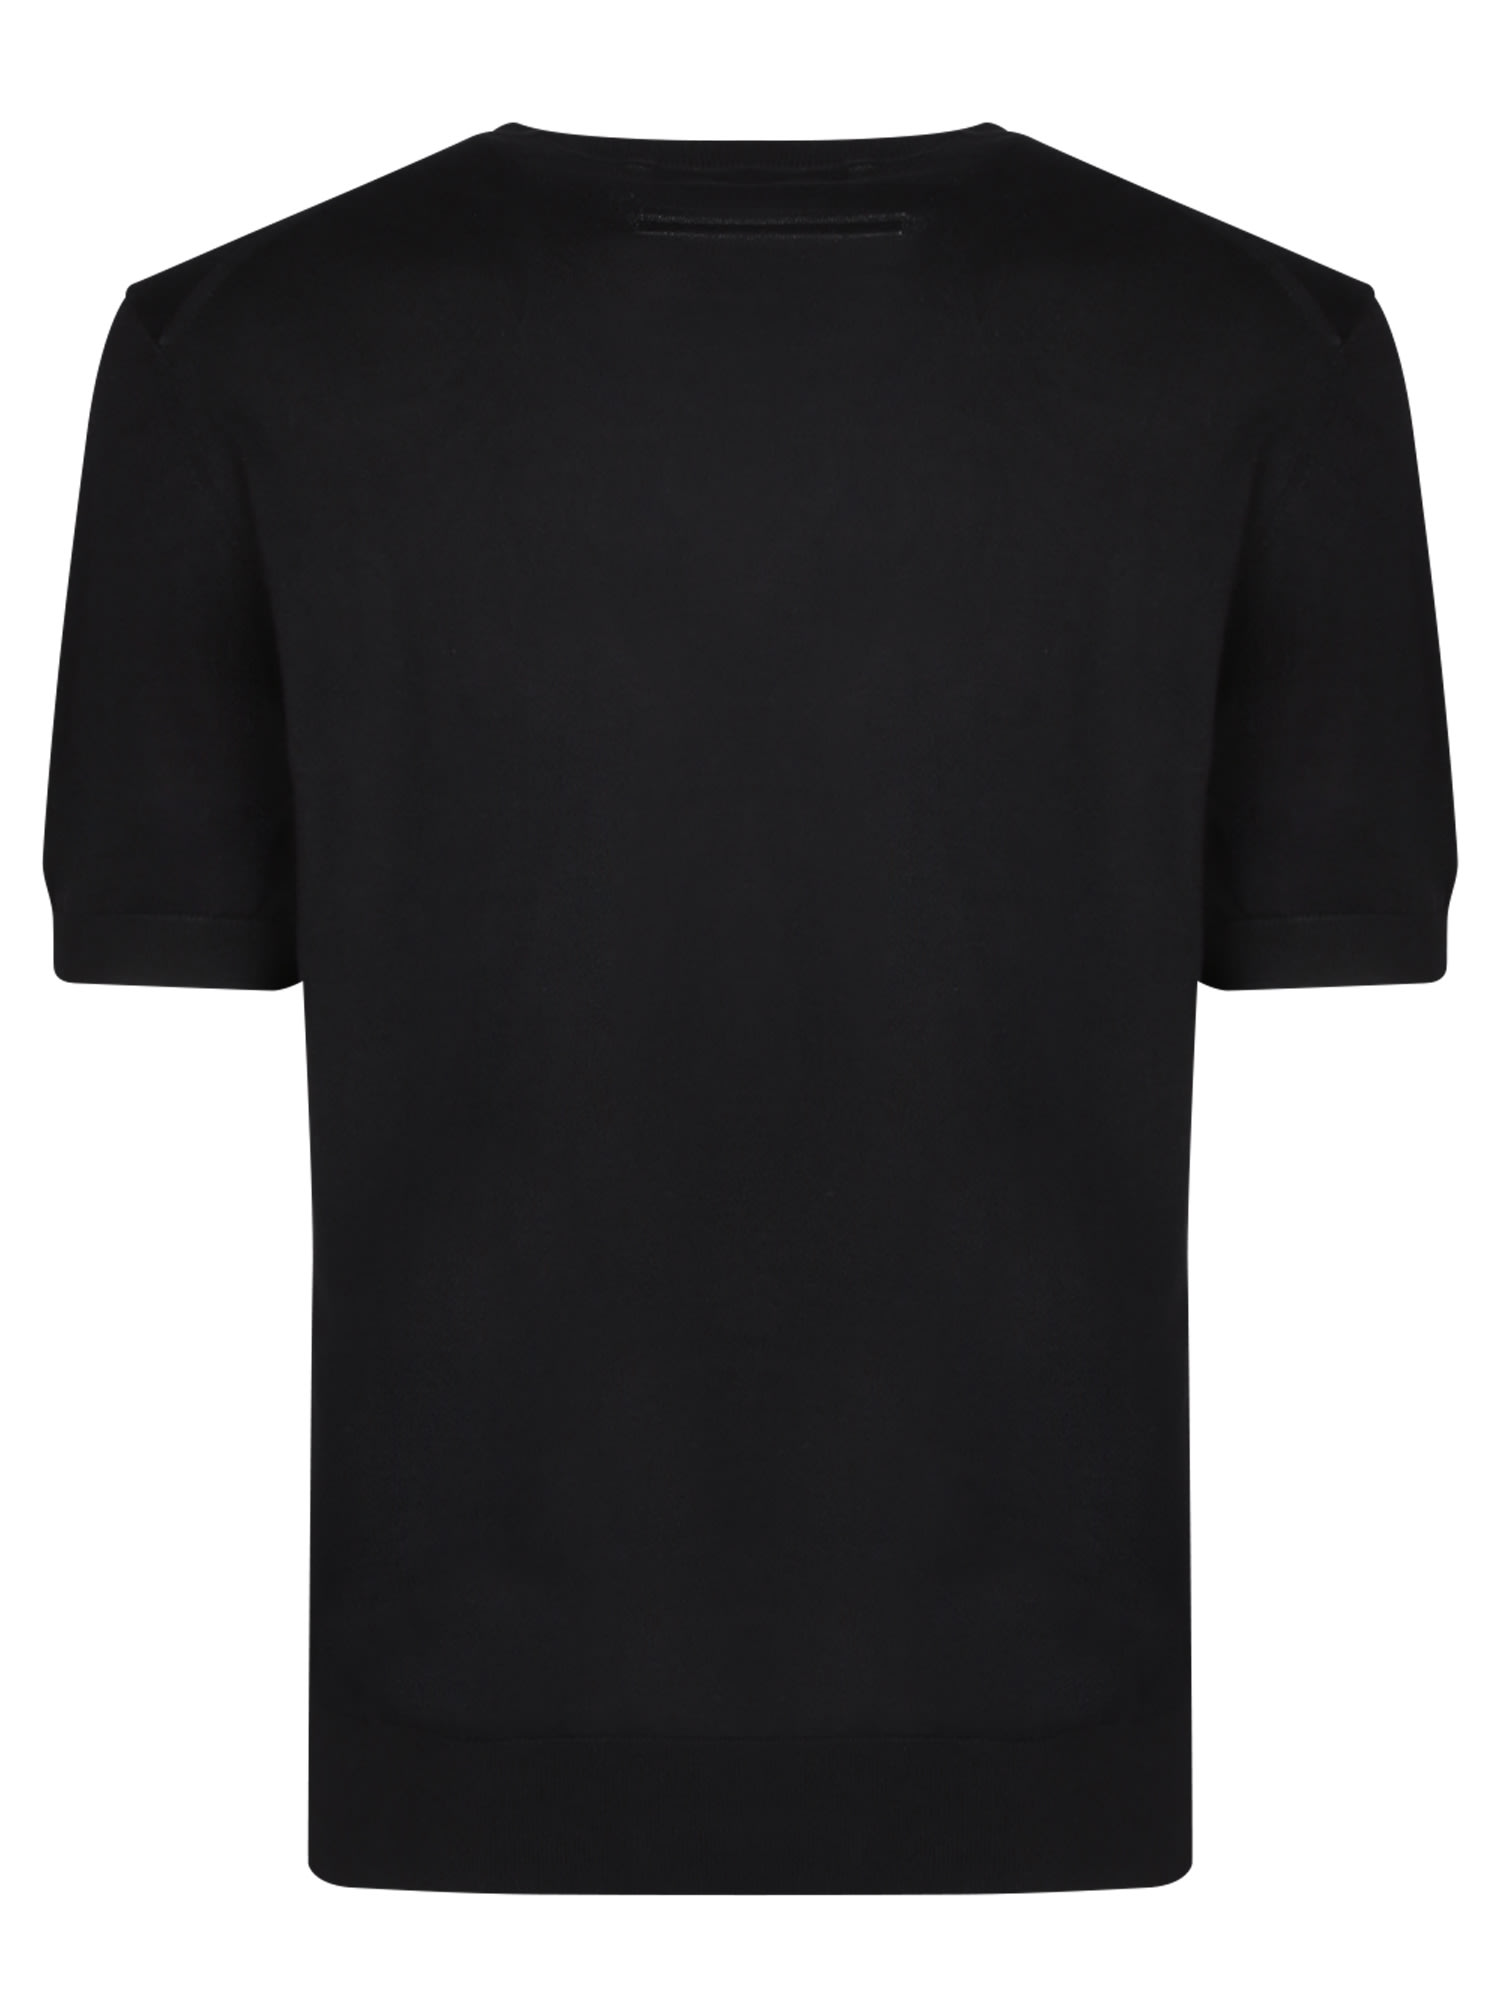 Shop Zegna Premium Black Cotton T-shirt